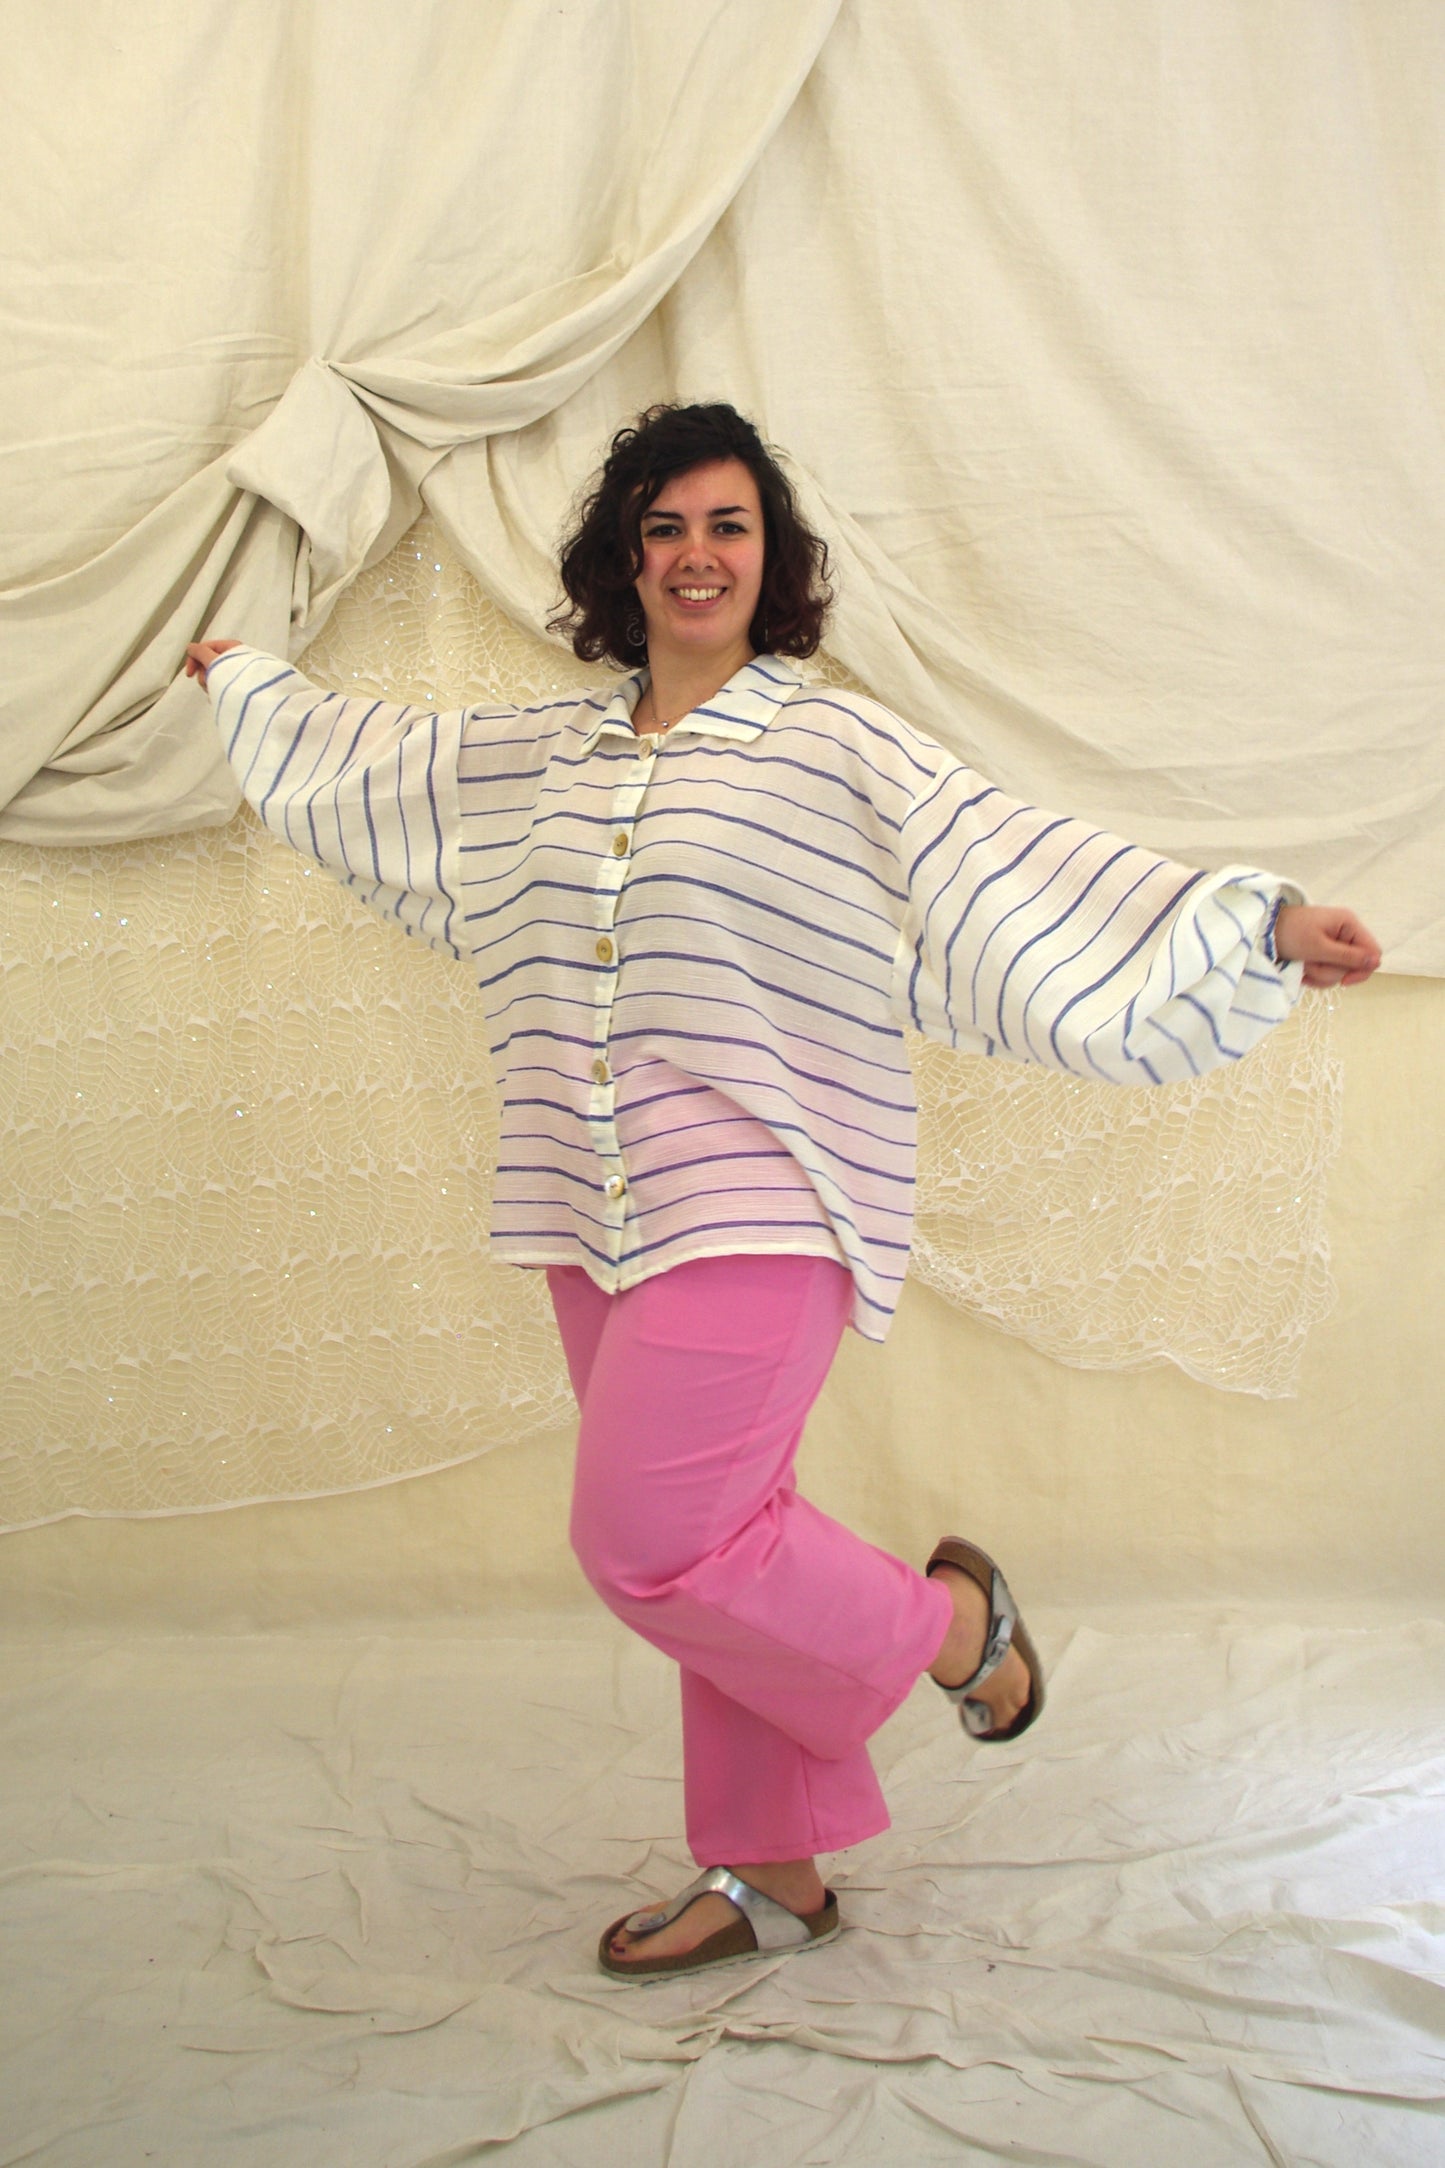 Belly Pantaloni in cotone rosa TAGLIA 2